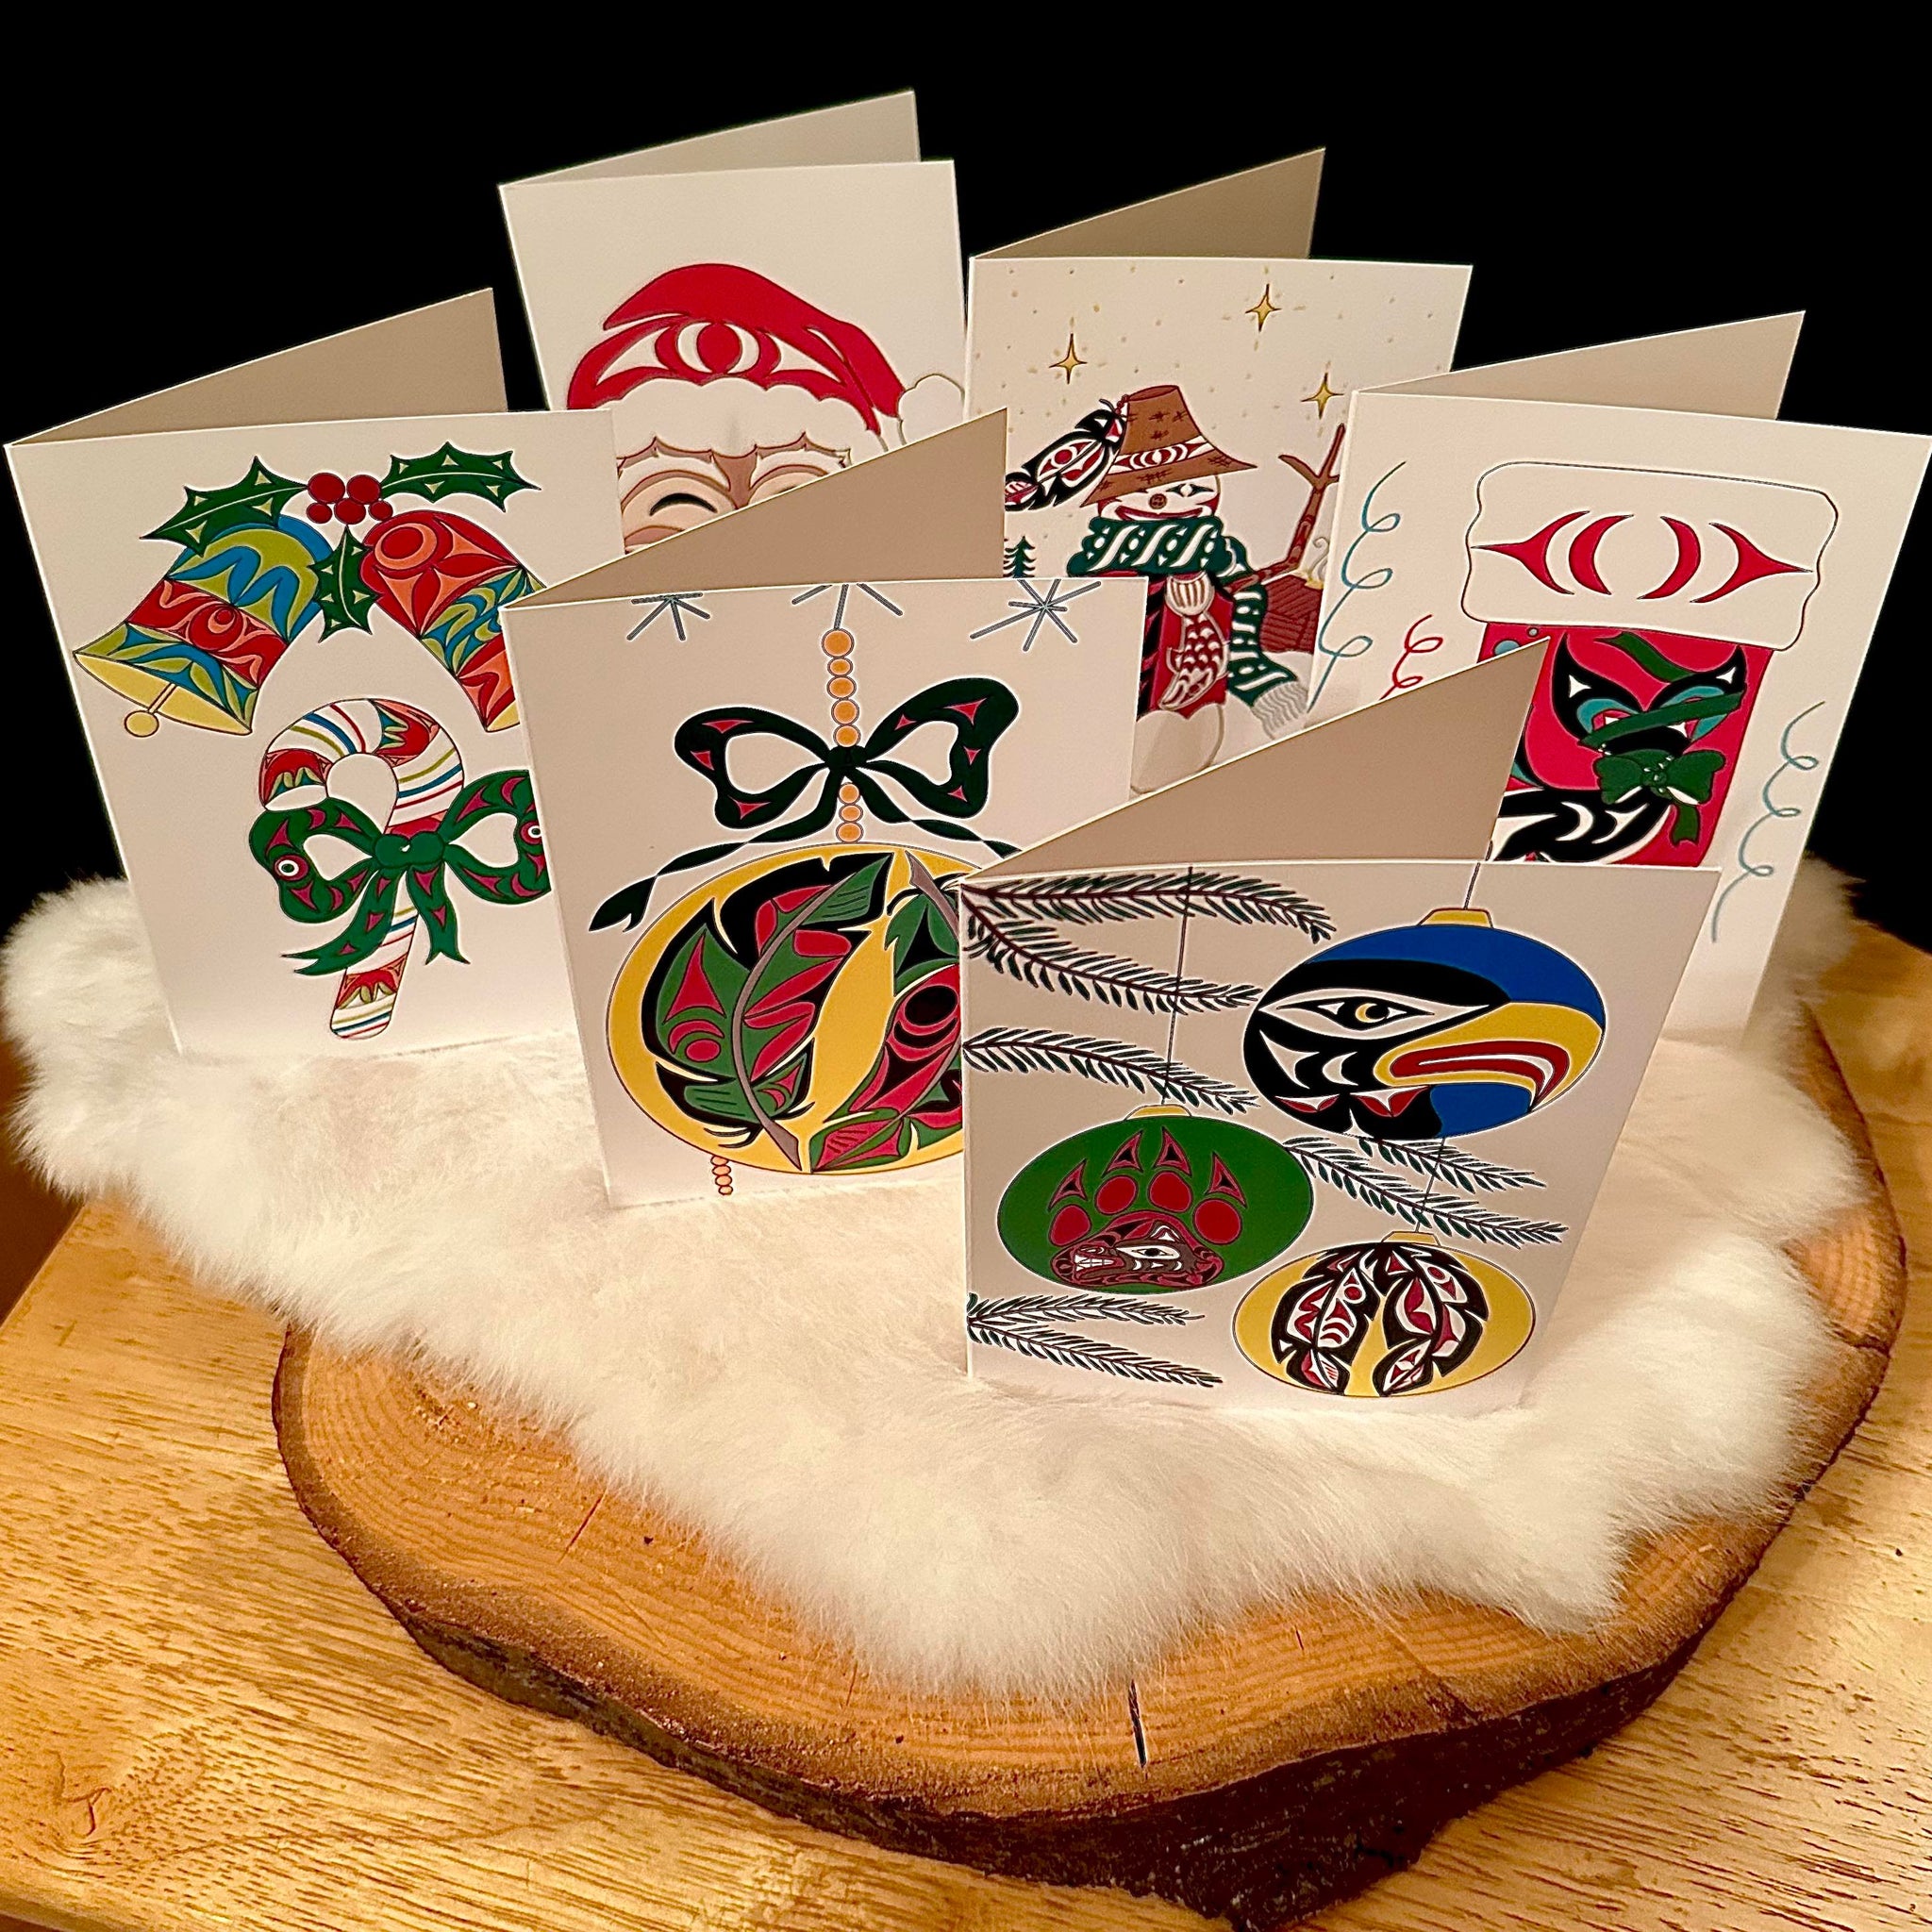 *Ensemble de 6 cartes de souhaits* Collection : ‘Joyeux Noël’. Artiste autochtone Angela Kimble.(#1) * (LIVRAISON GRATUITE!)